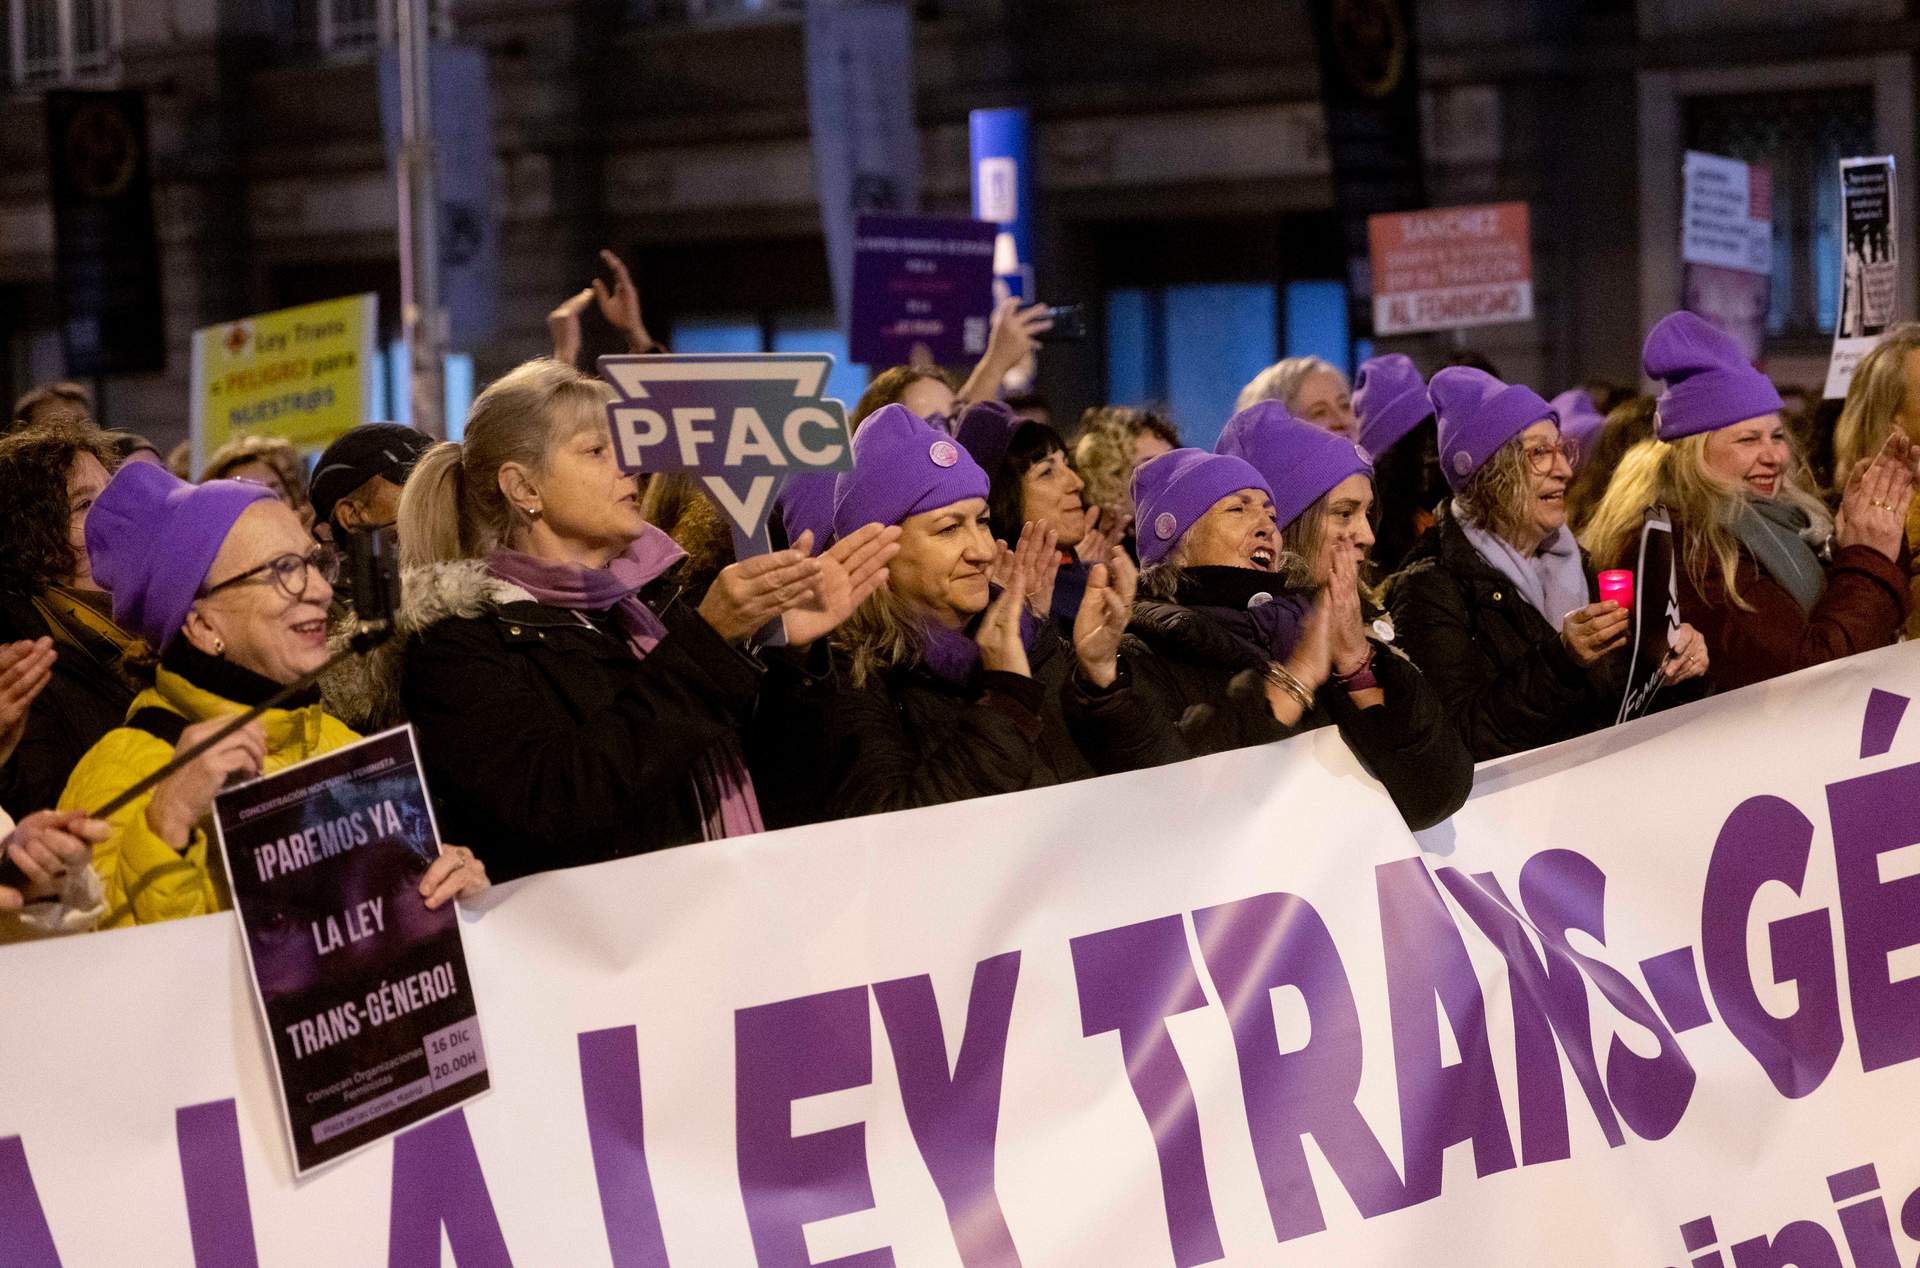 El partido Feministas al Congreso (PFAC) convocó en 2022 una concentración nocturna en protesta contra la denominada 'Ley Trans', que calificaron como "una ley mordaza, homófoba y misógina” que hace "retroceder en derechos a las mujeres y a los menores” (Foto: Alberto Ortega / Europa Press)